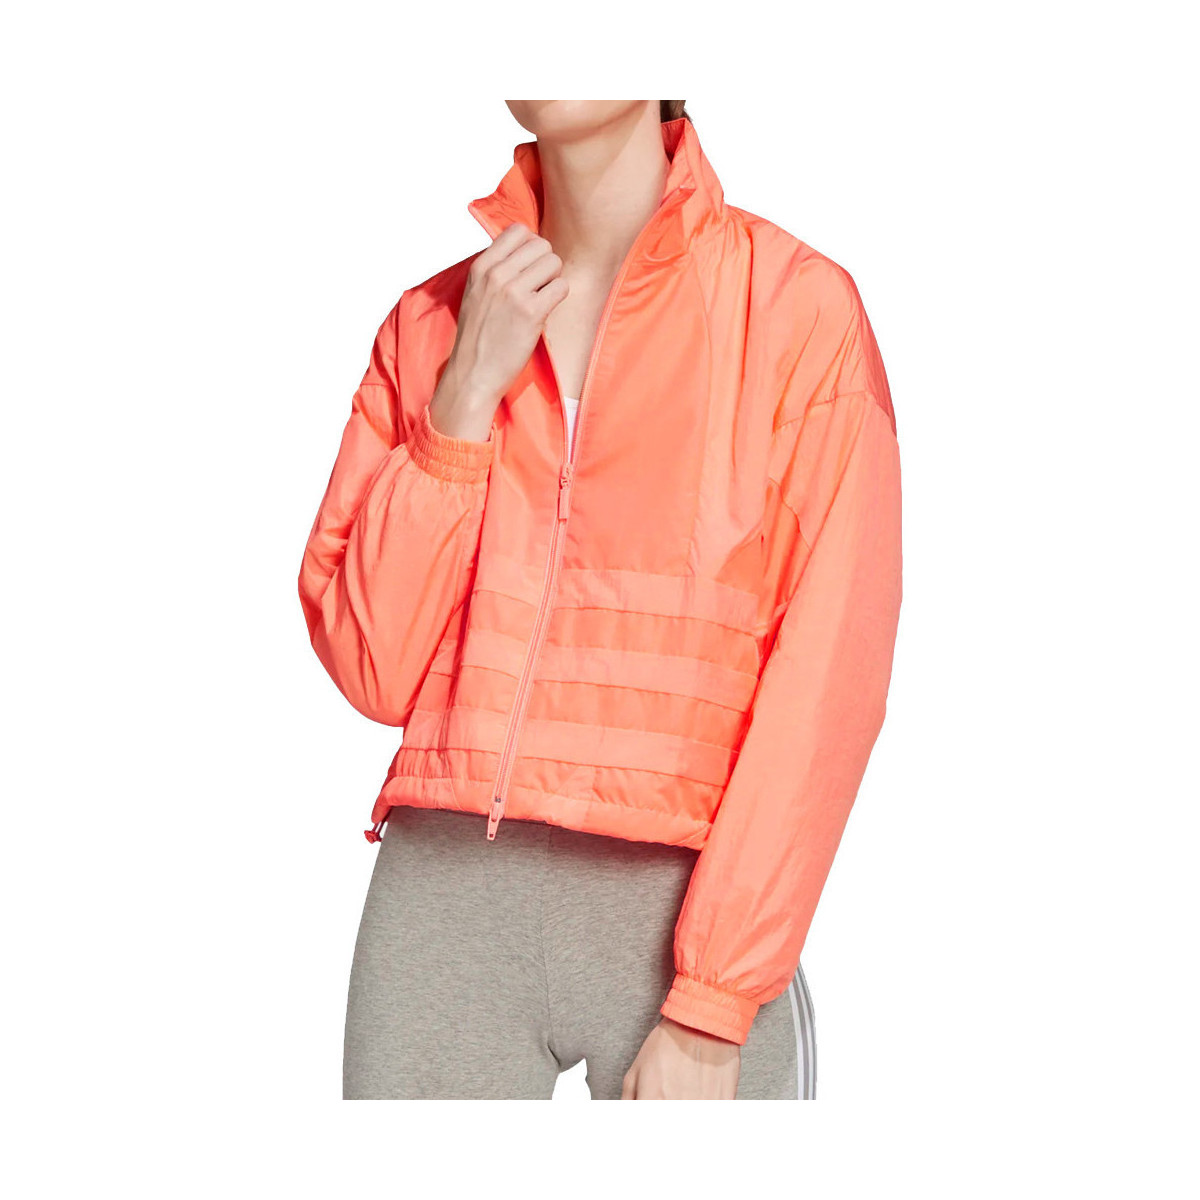 Kleidung Damen Jacken / Blazers adidas Originals FM2582 Orange